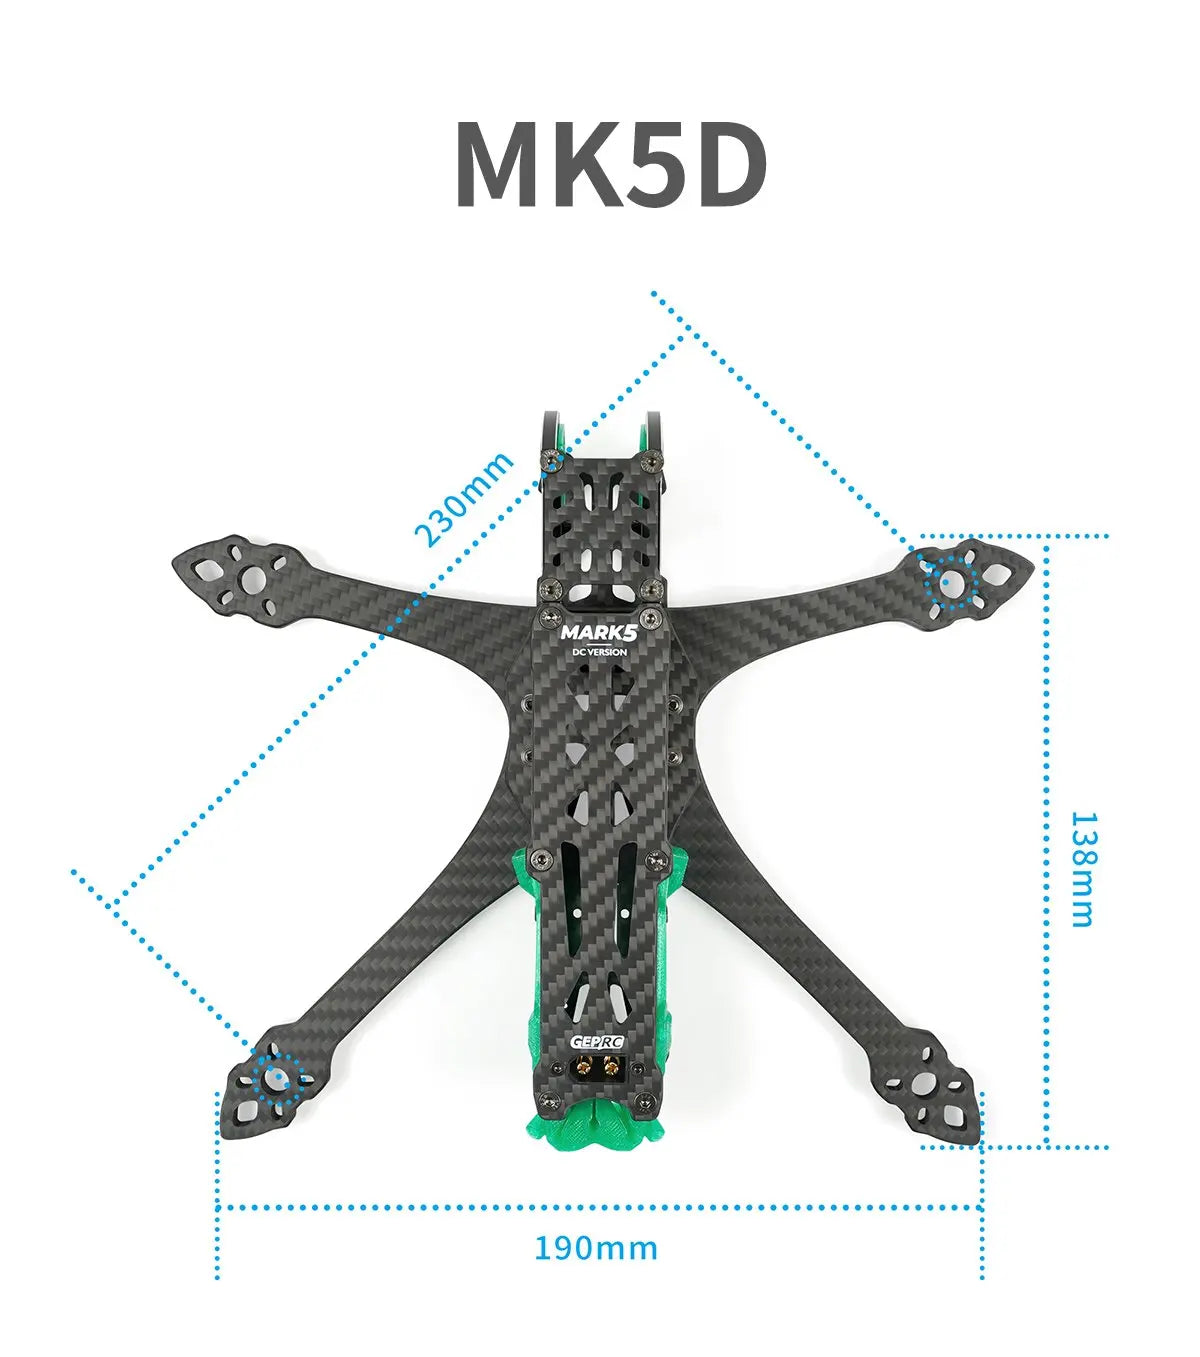 GEP-MK5D O3 MK5X to MK5D Conve DeadCat Frame, MKSD MARKS DCVERSION 1 GEPRG 190mm 230